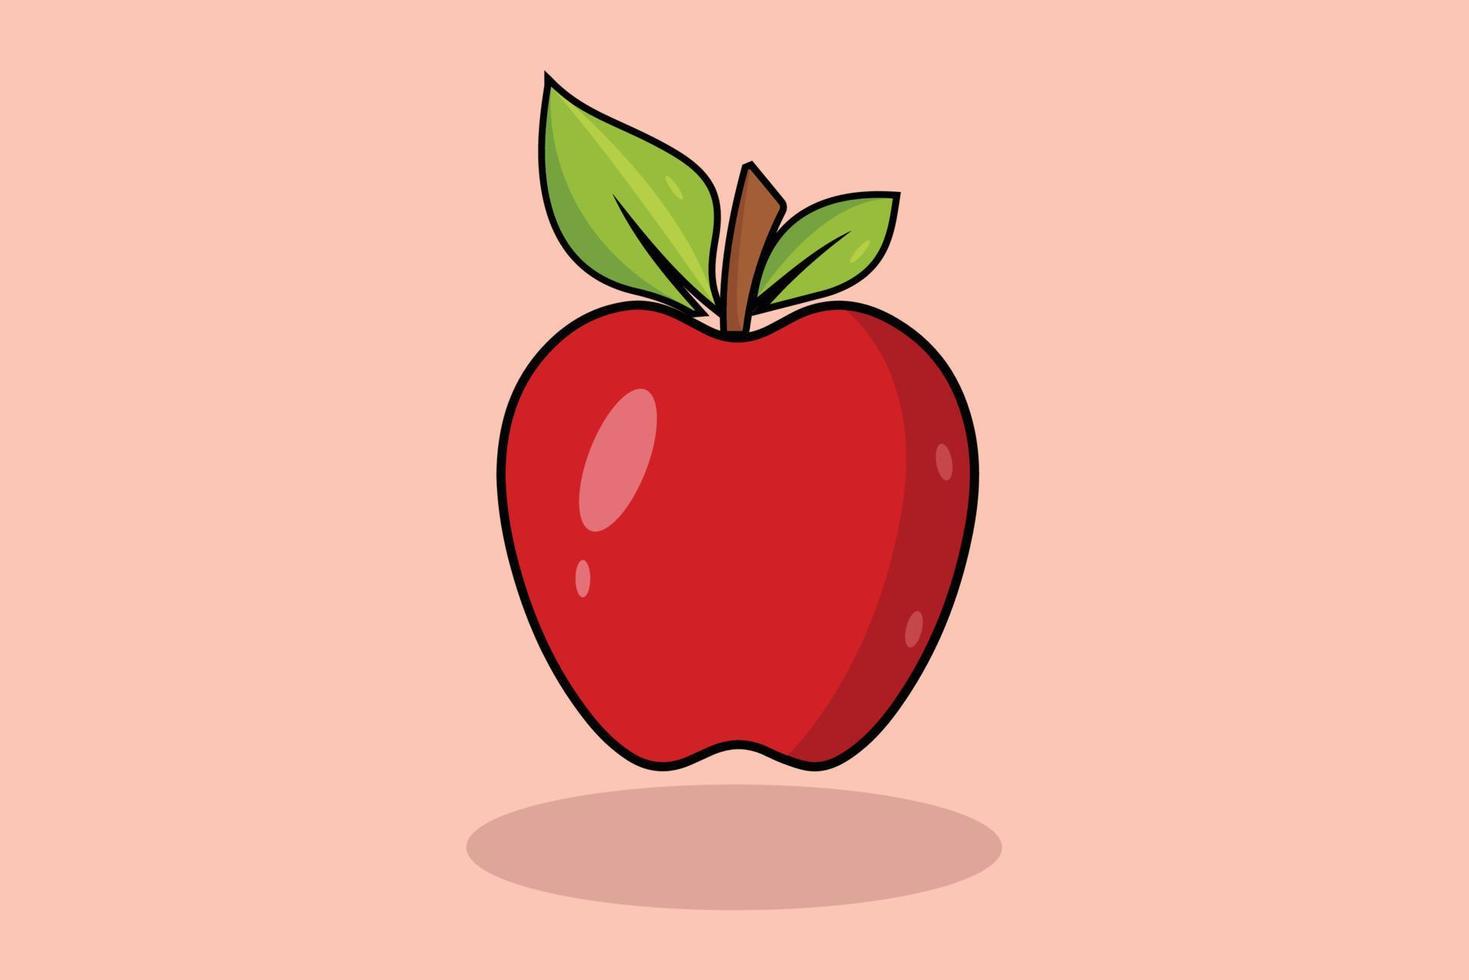 en röd äpple med grön löv på den vektor